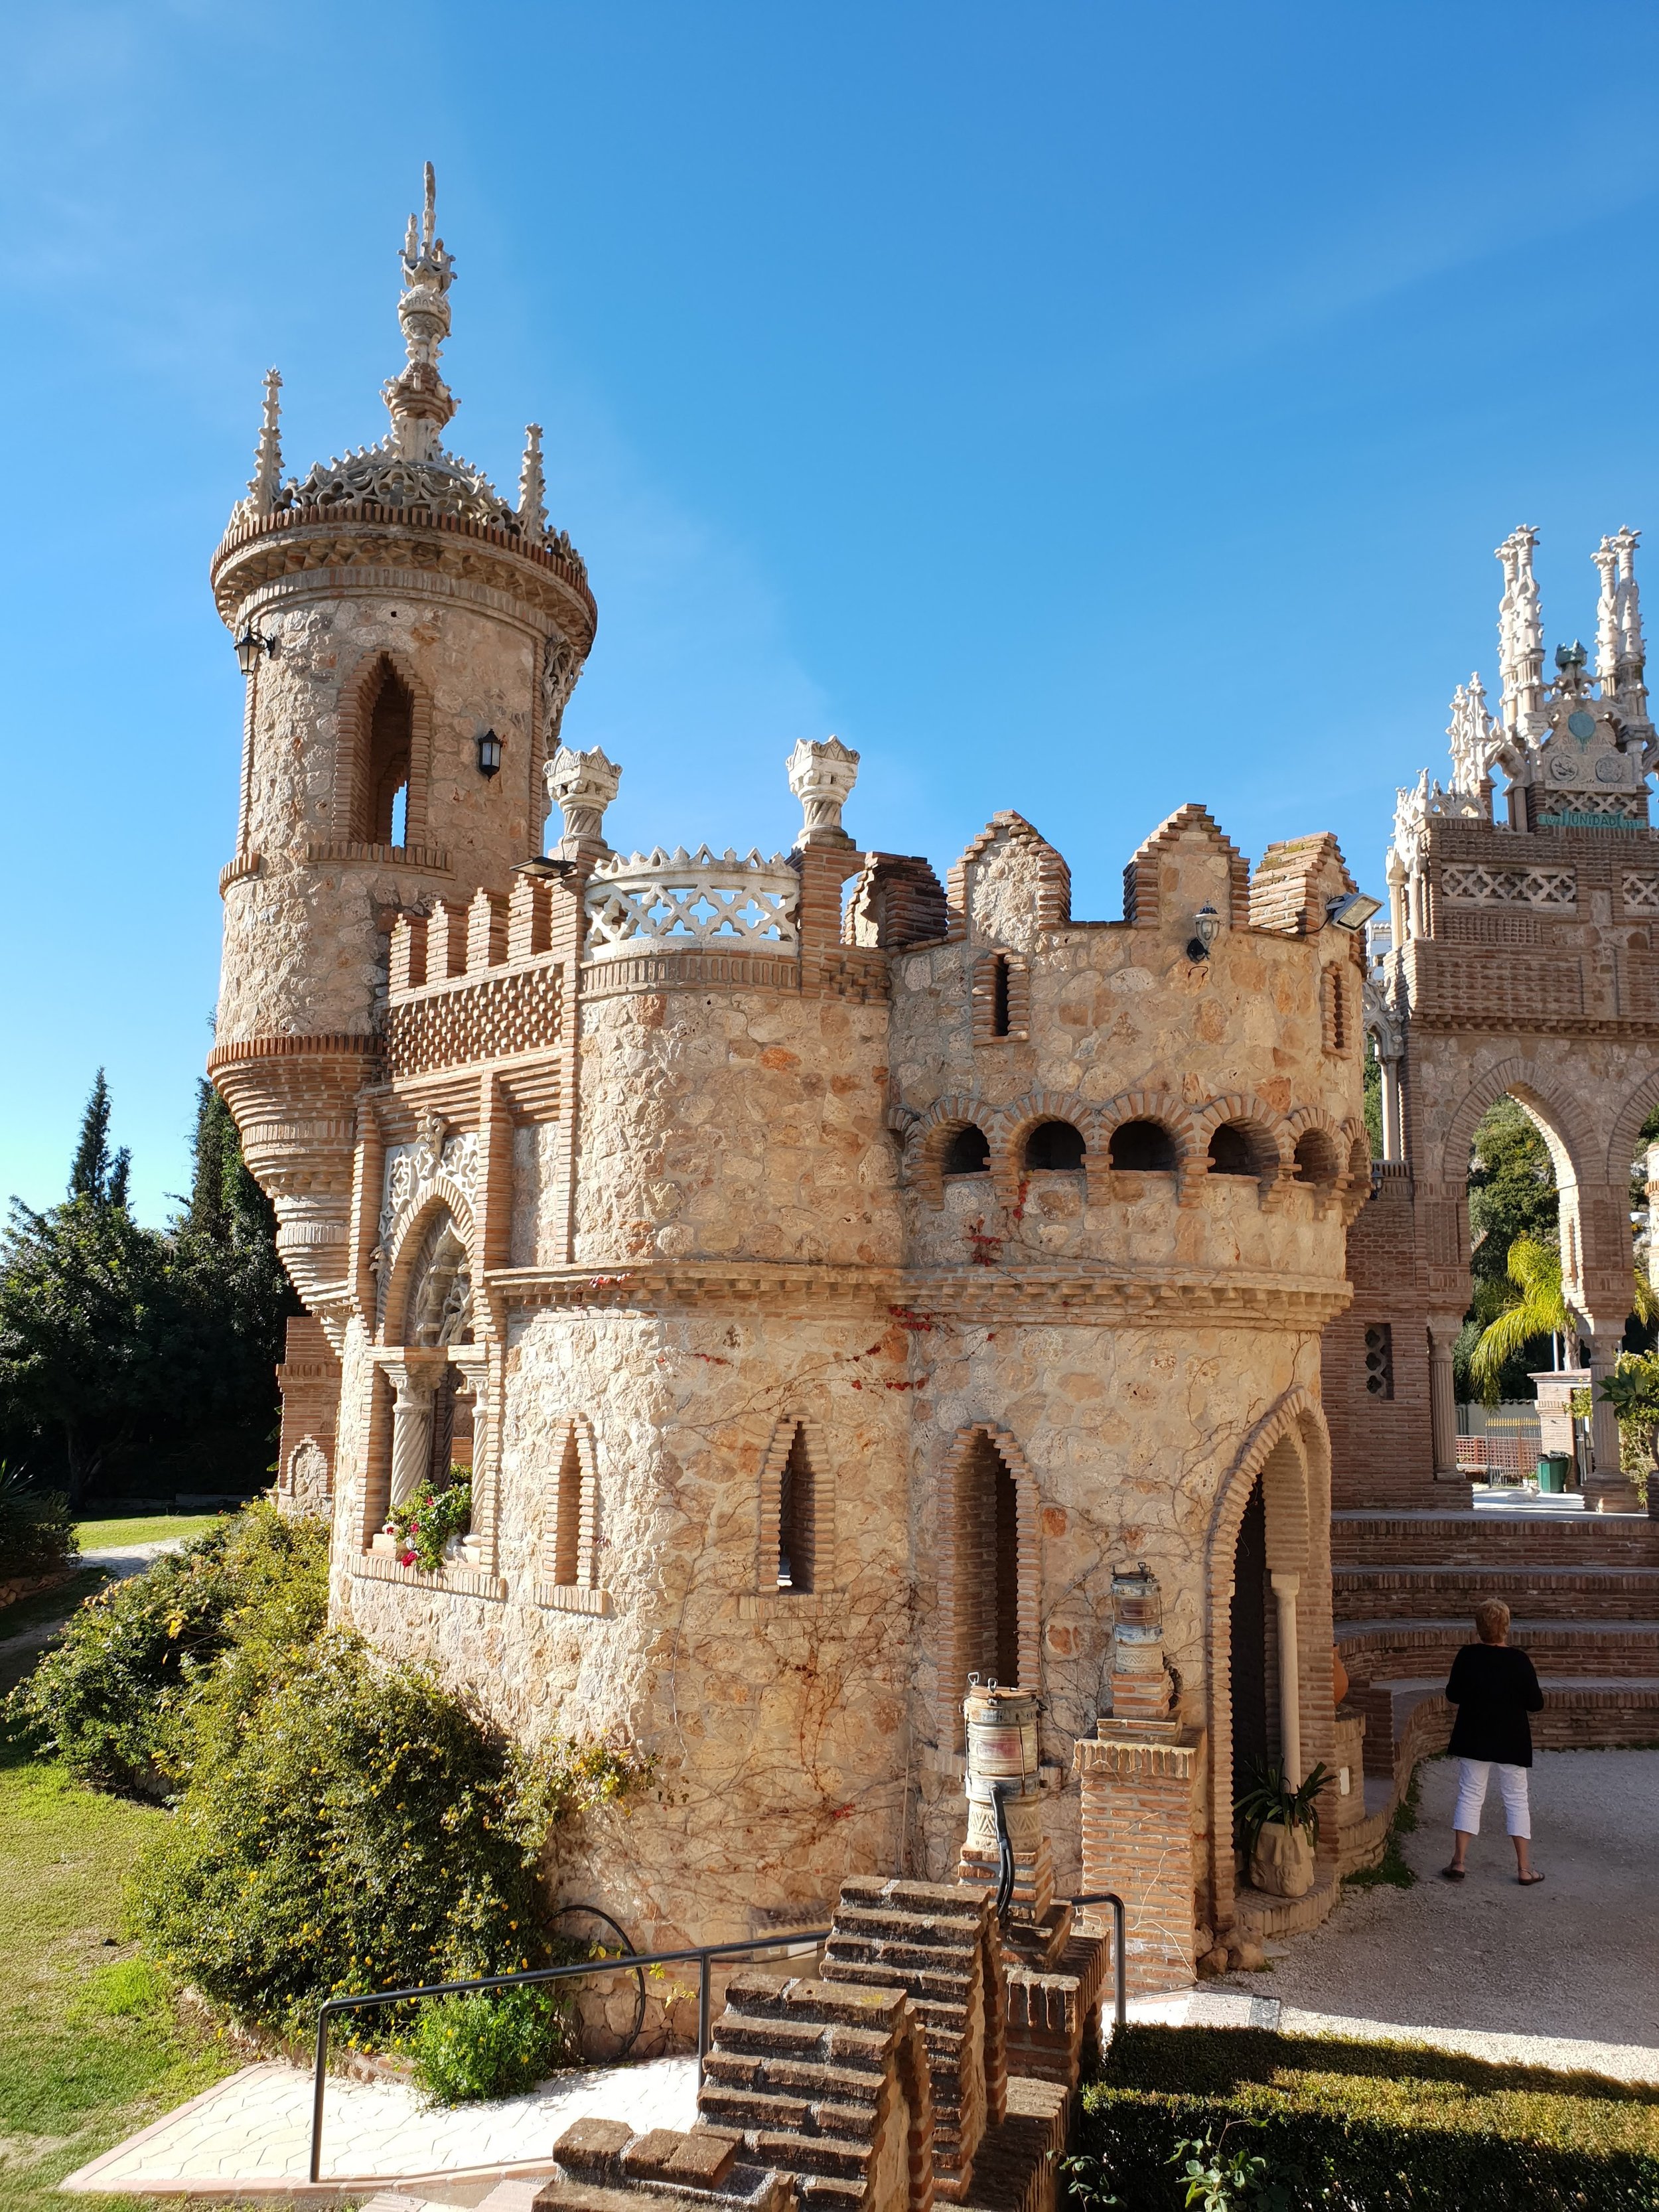 Described as a ‘fantasia en piedra,’ or ‘fantasy in stone,’ the Castillo de Colomares truly will enchant you.